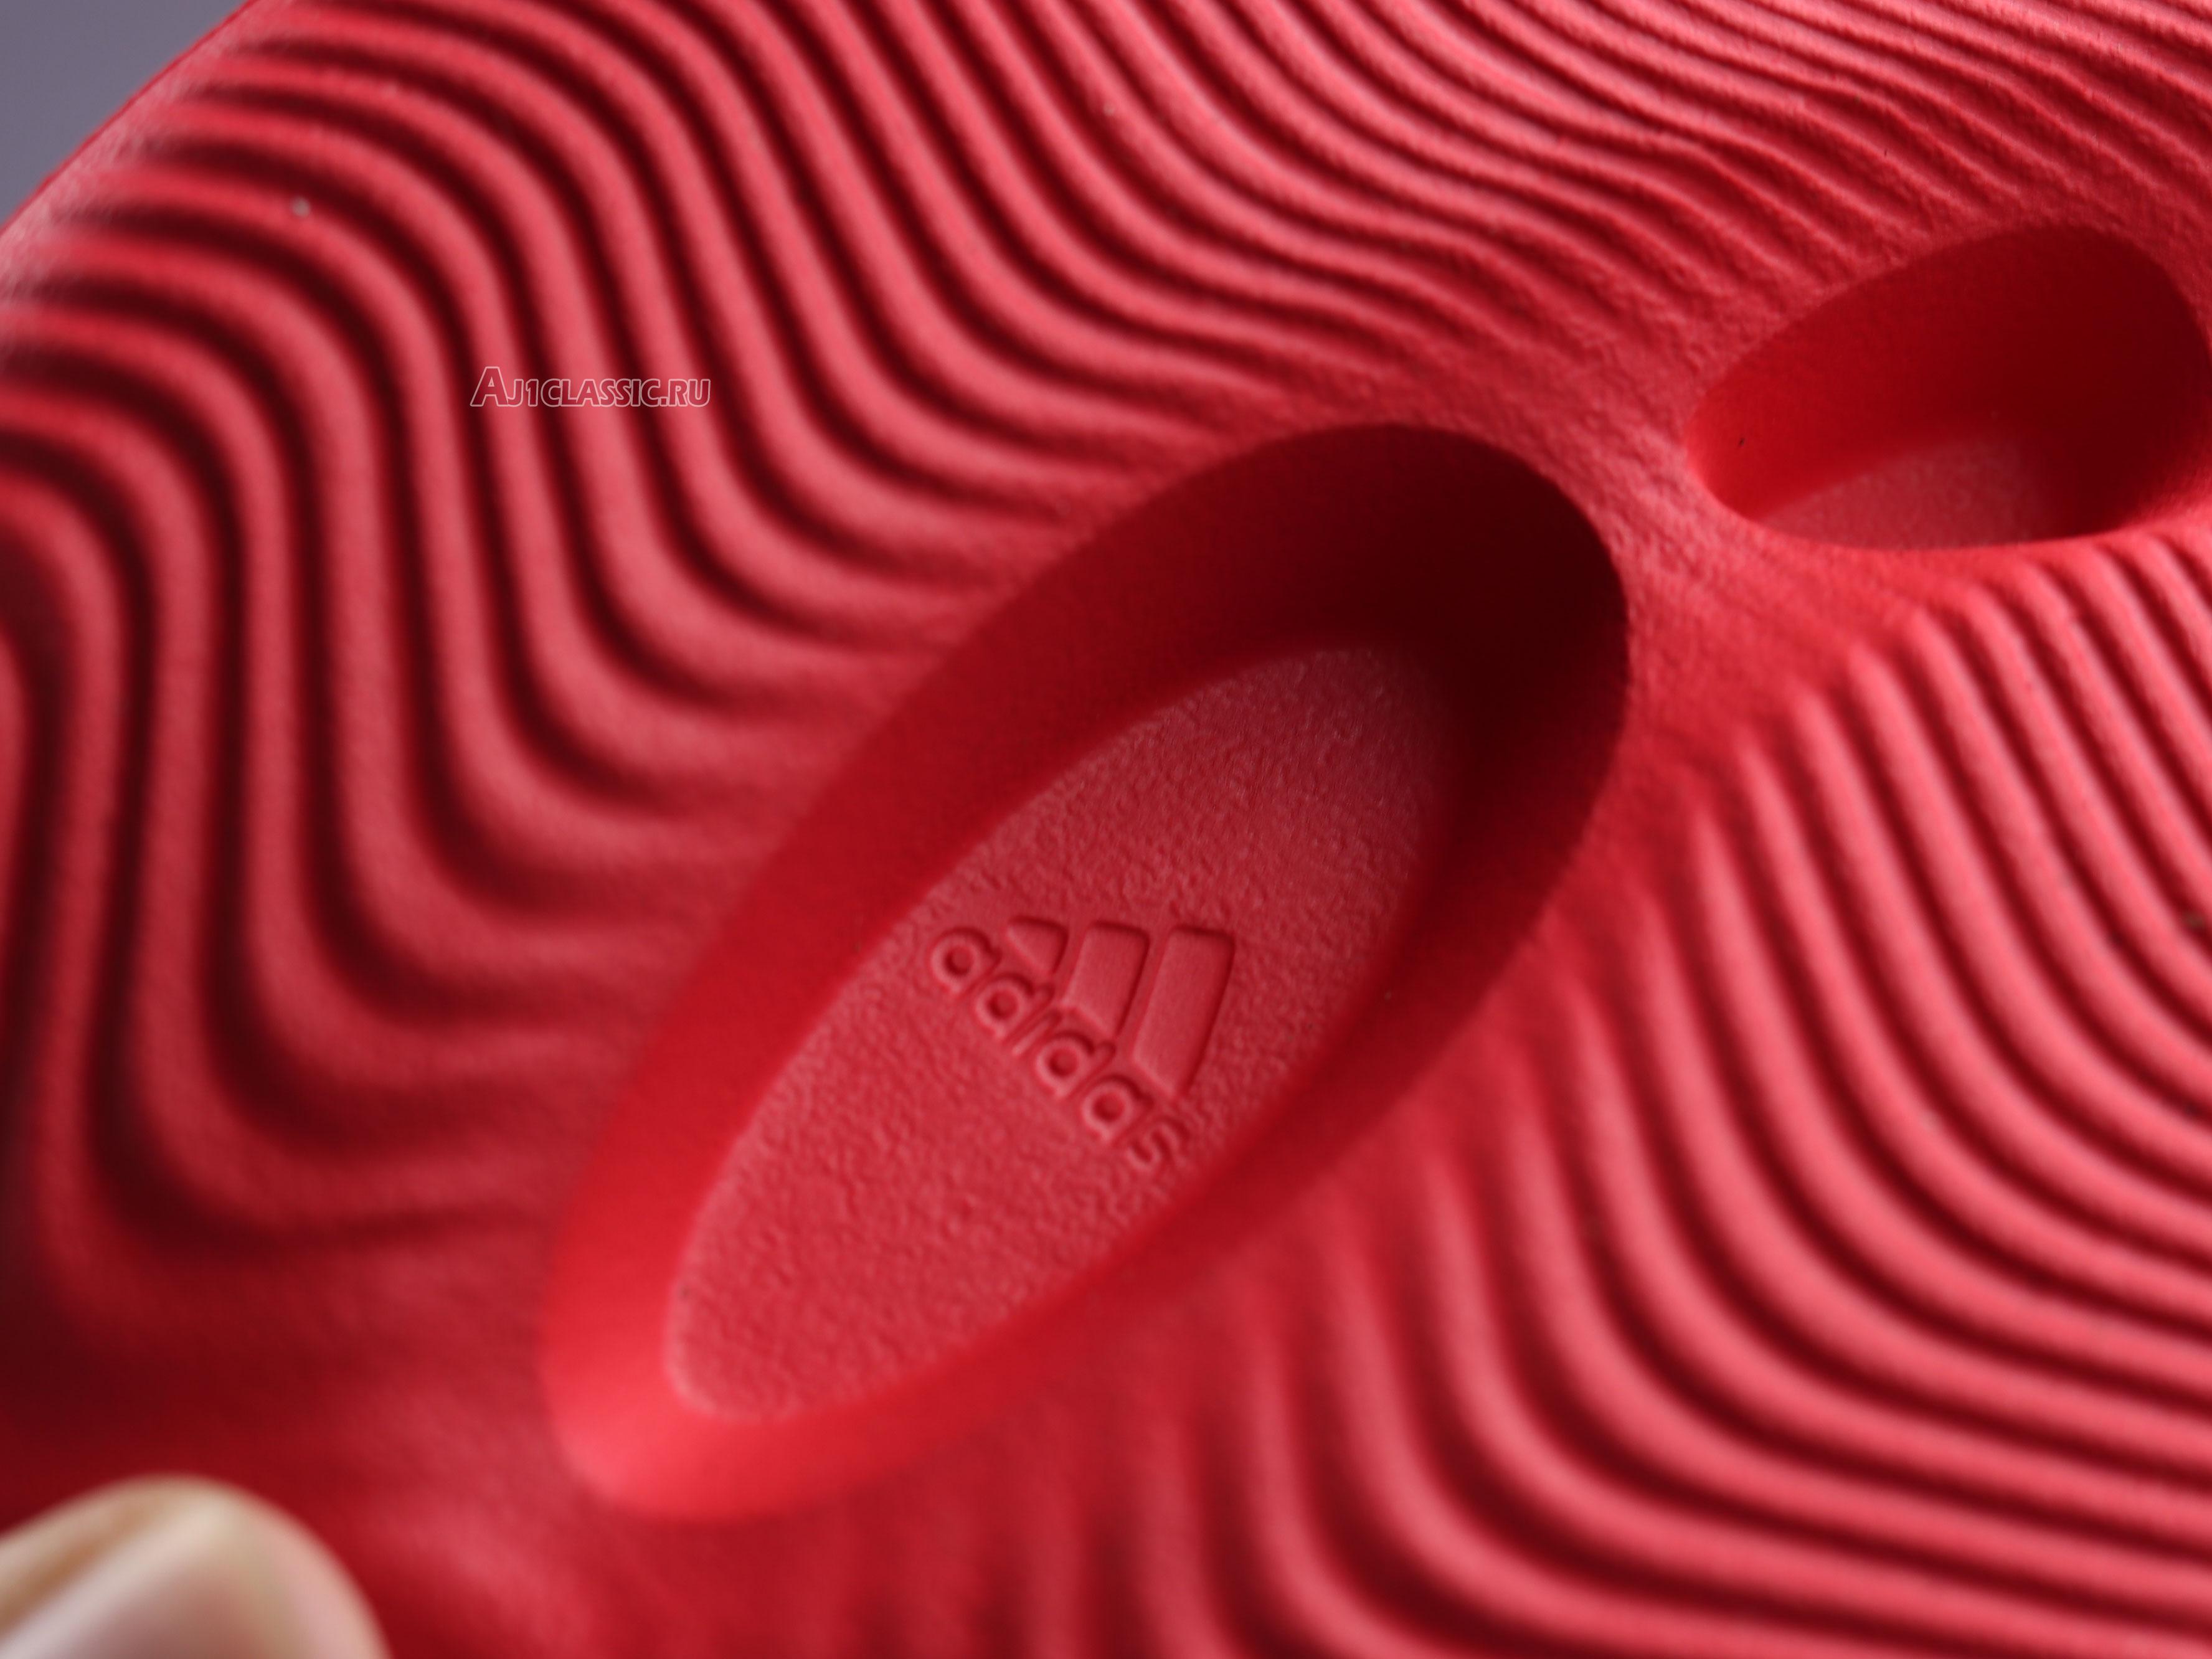 Adidas Yeezy Foam Runner "Vermilion" GW3355